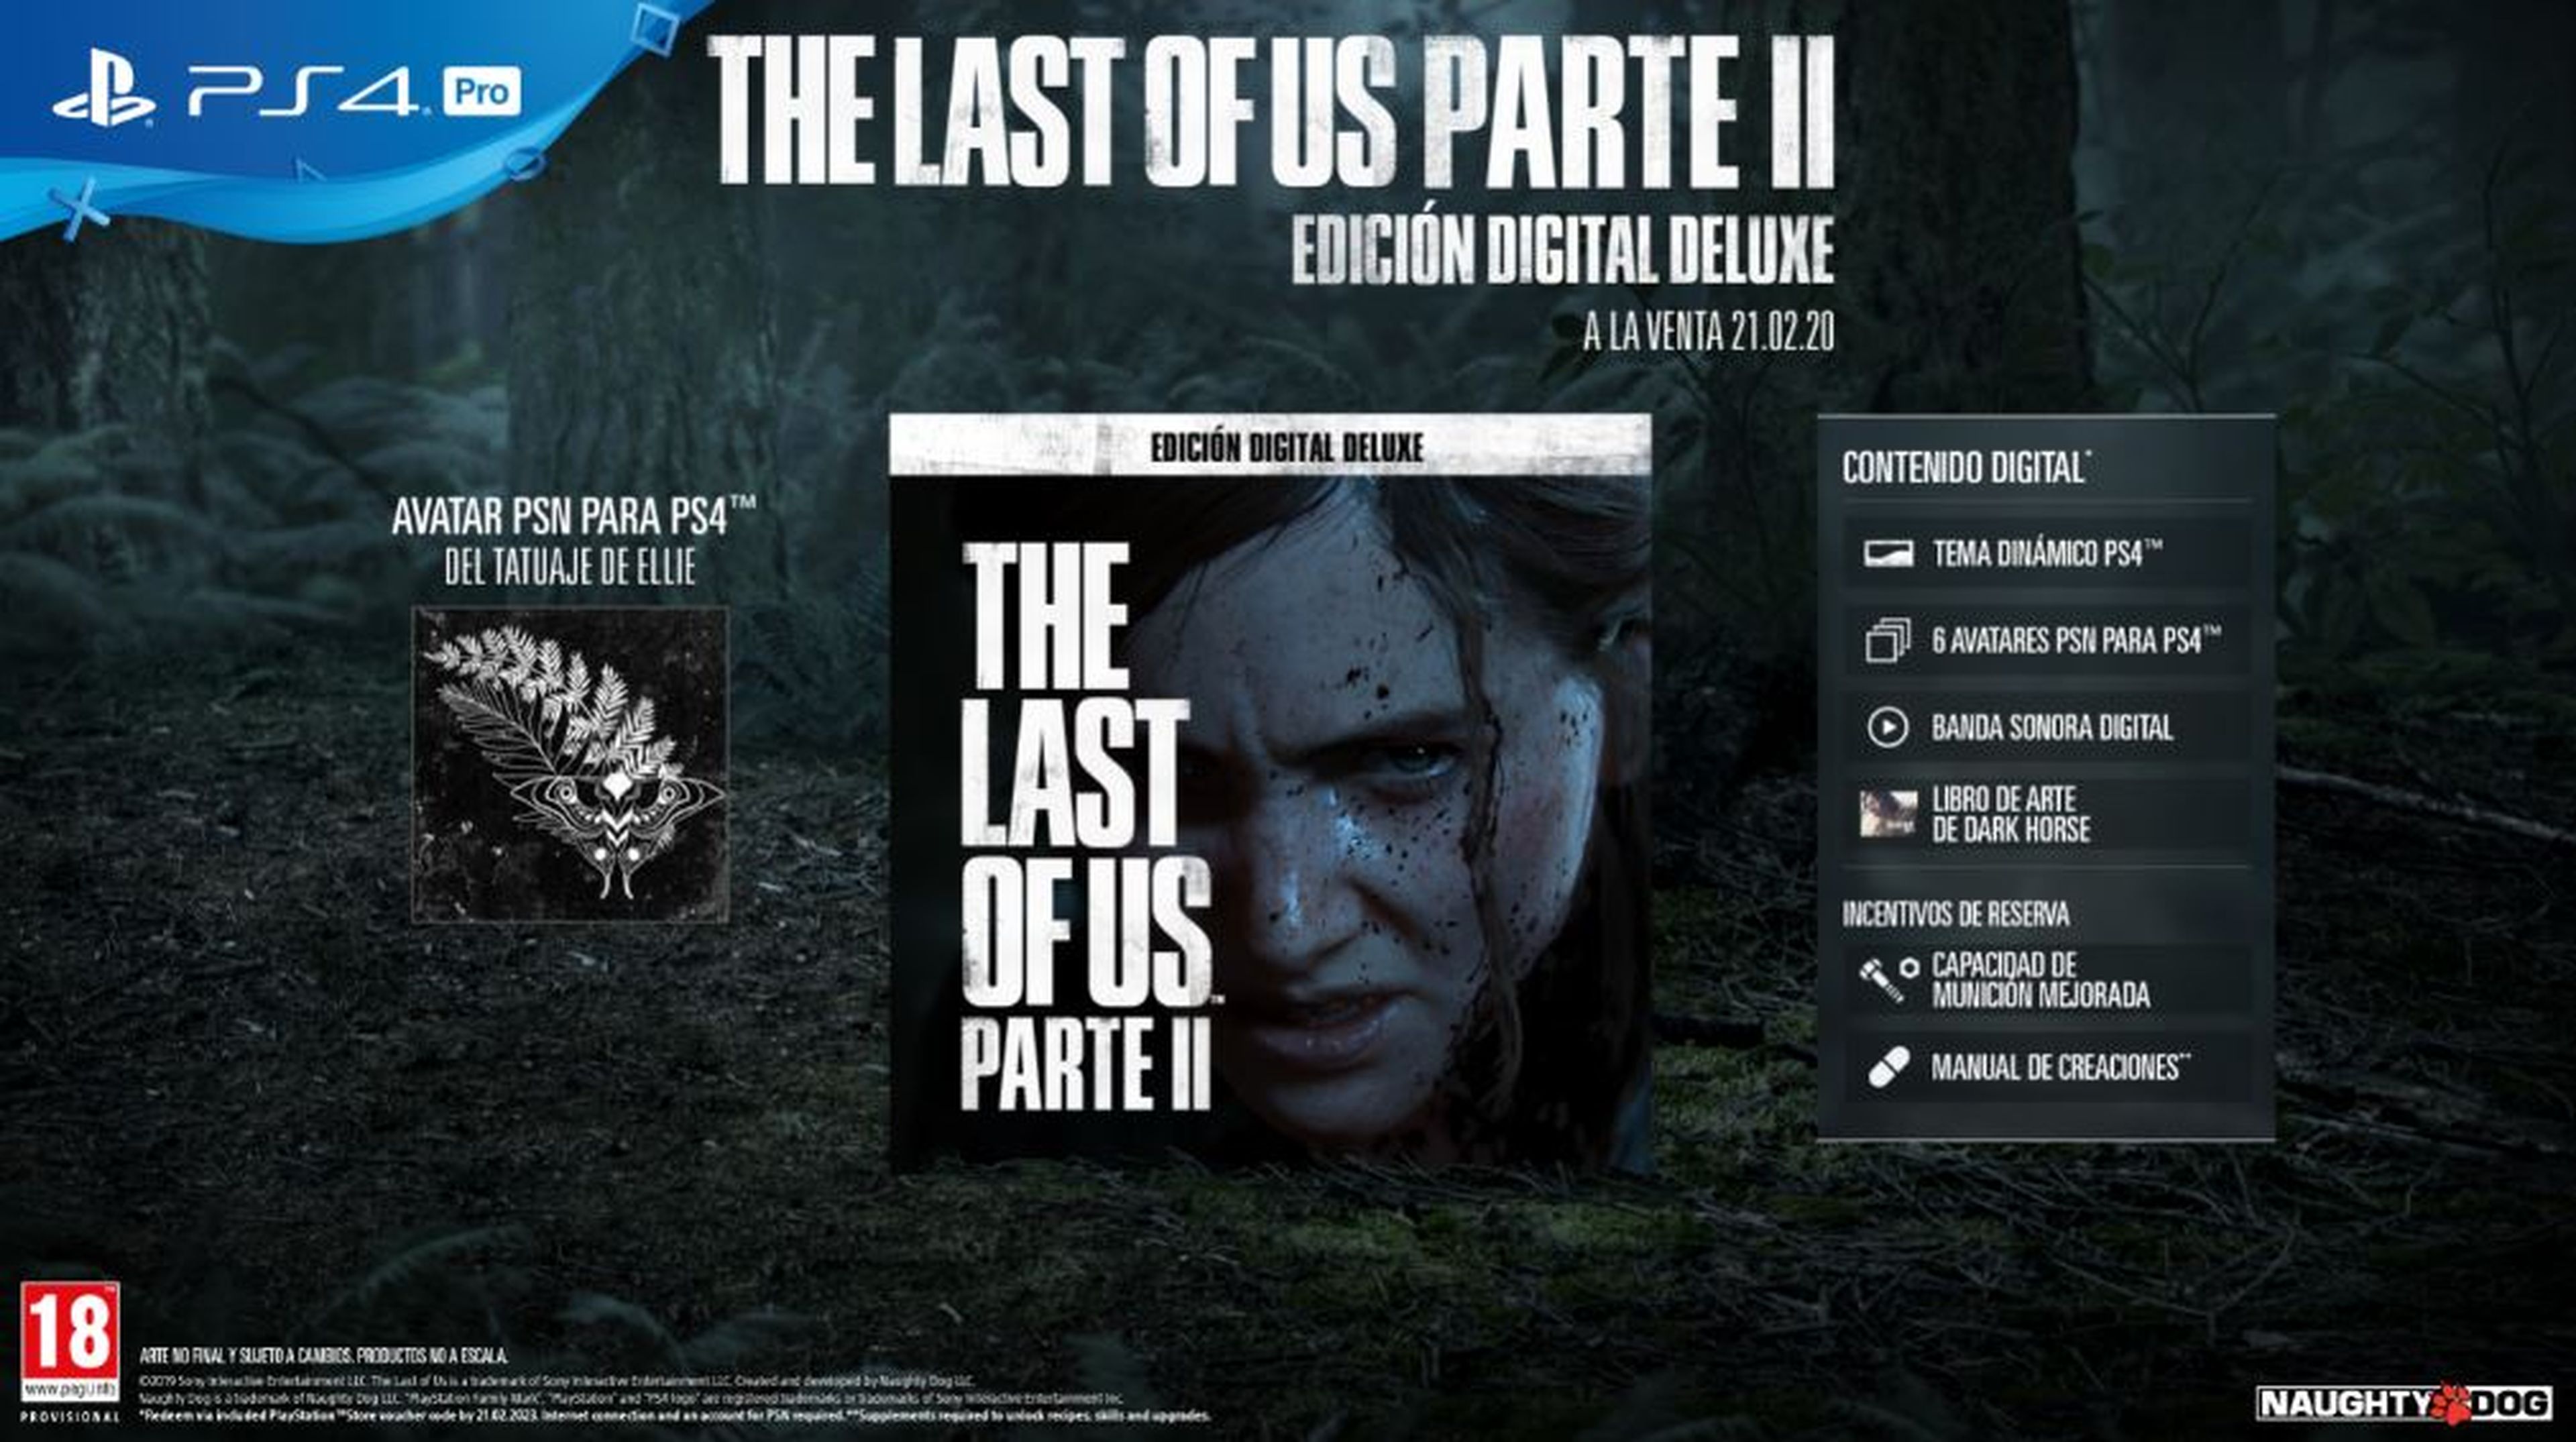 The Lasf ot Us 2 Edicion Digital Deluxe